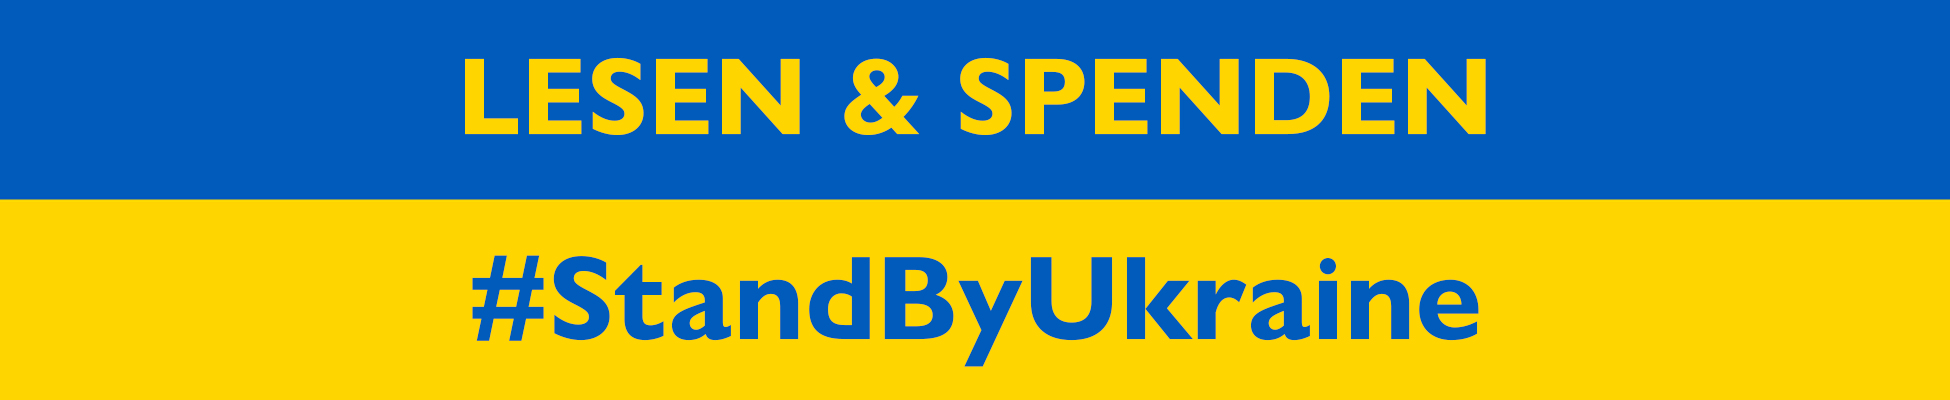 Lesen und Spenden / #StandByUkraine